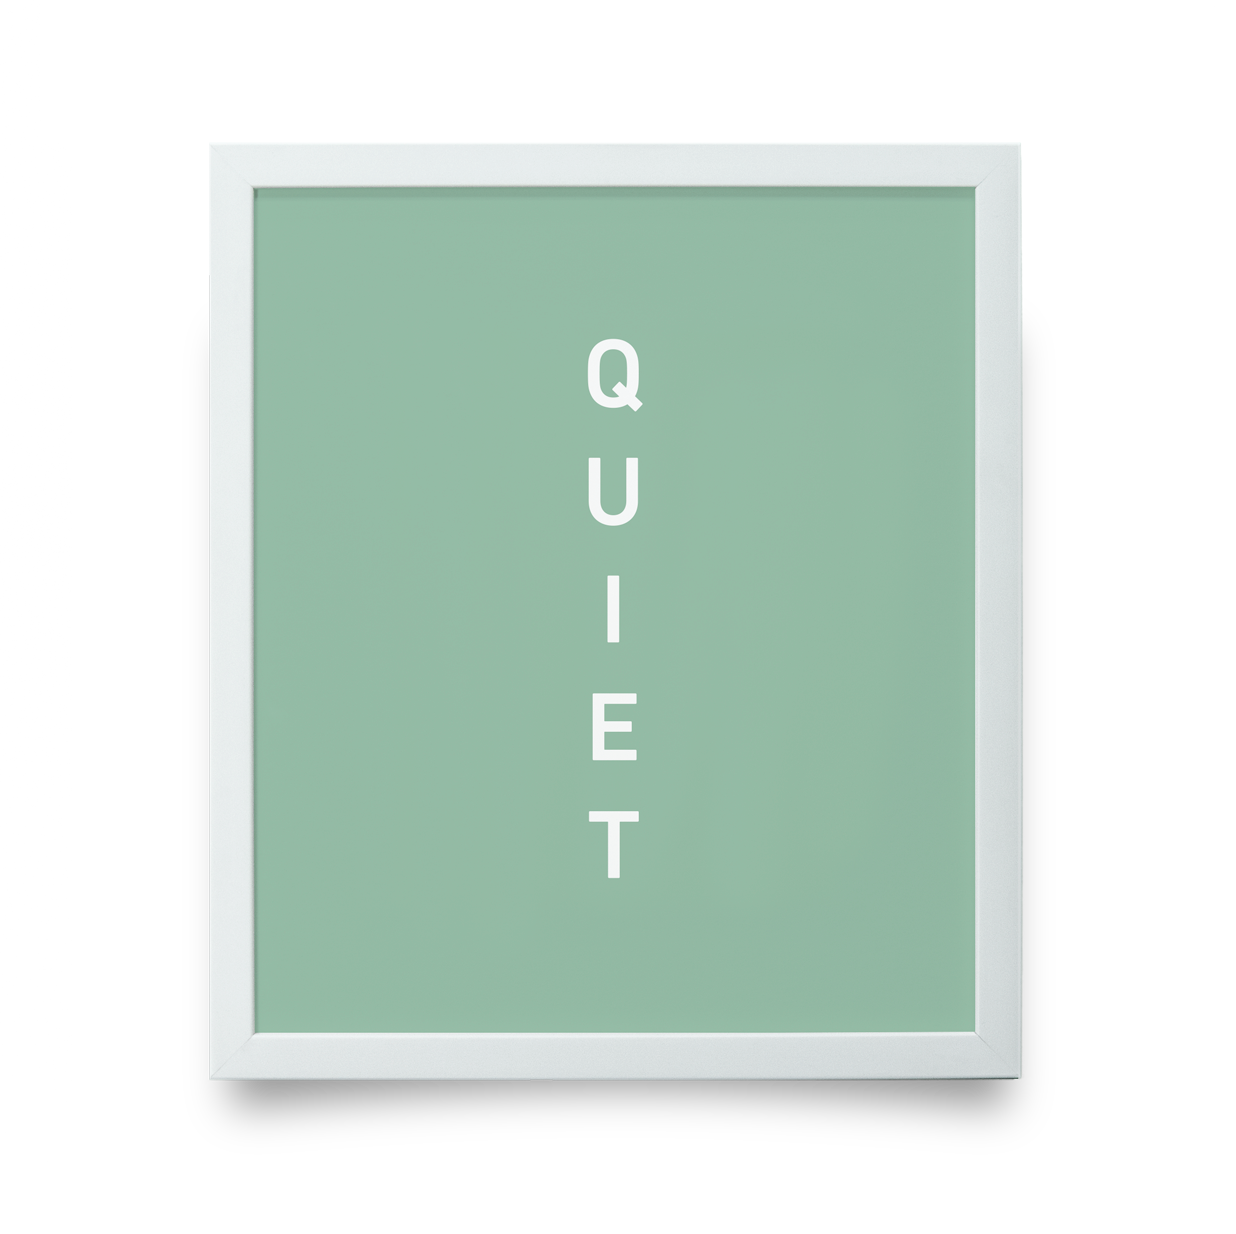 Golf Art - Quiet Green Giclée Print (White Wood Frame)